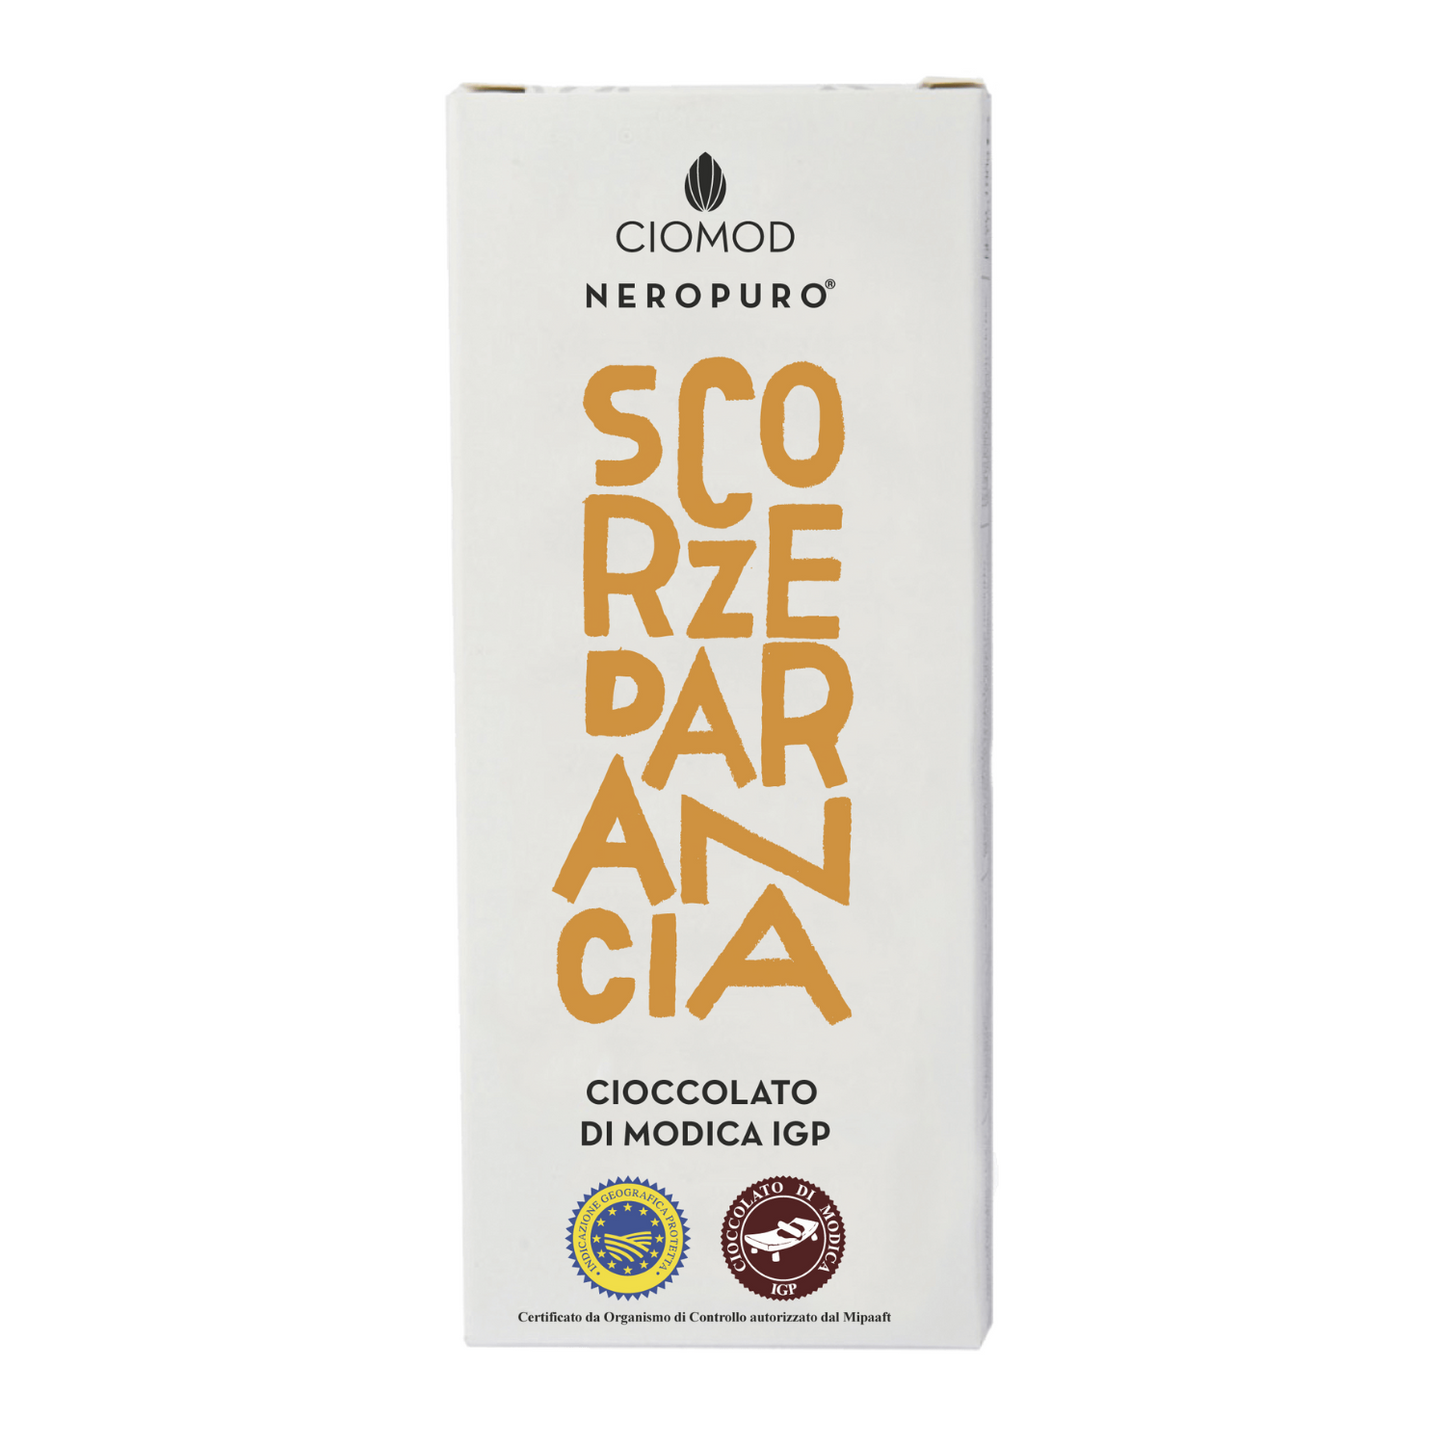 Cioccolato di Modica Igp Scorze d'Arancia - Ciomod